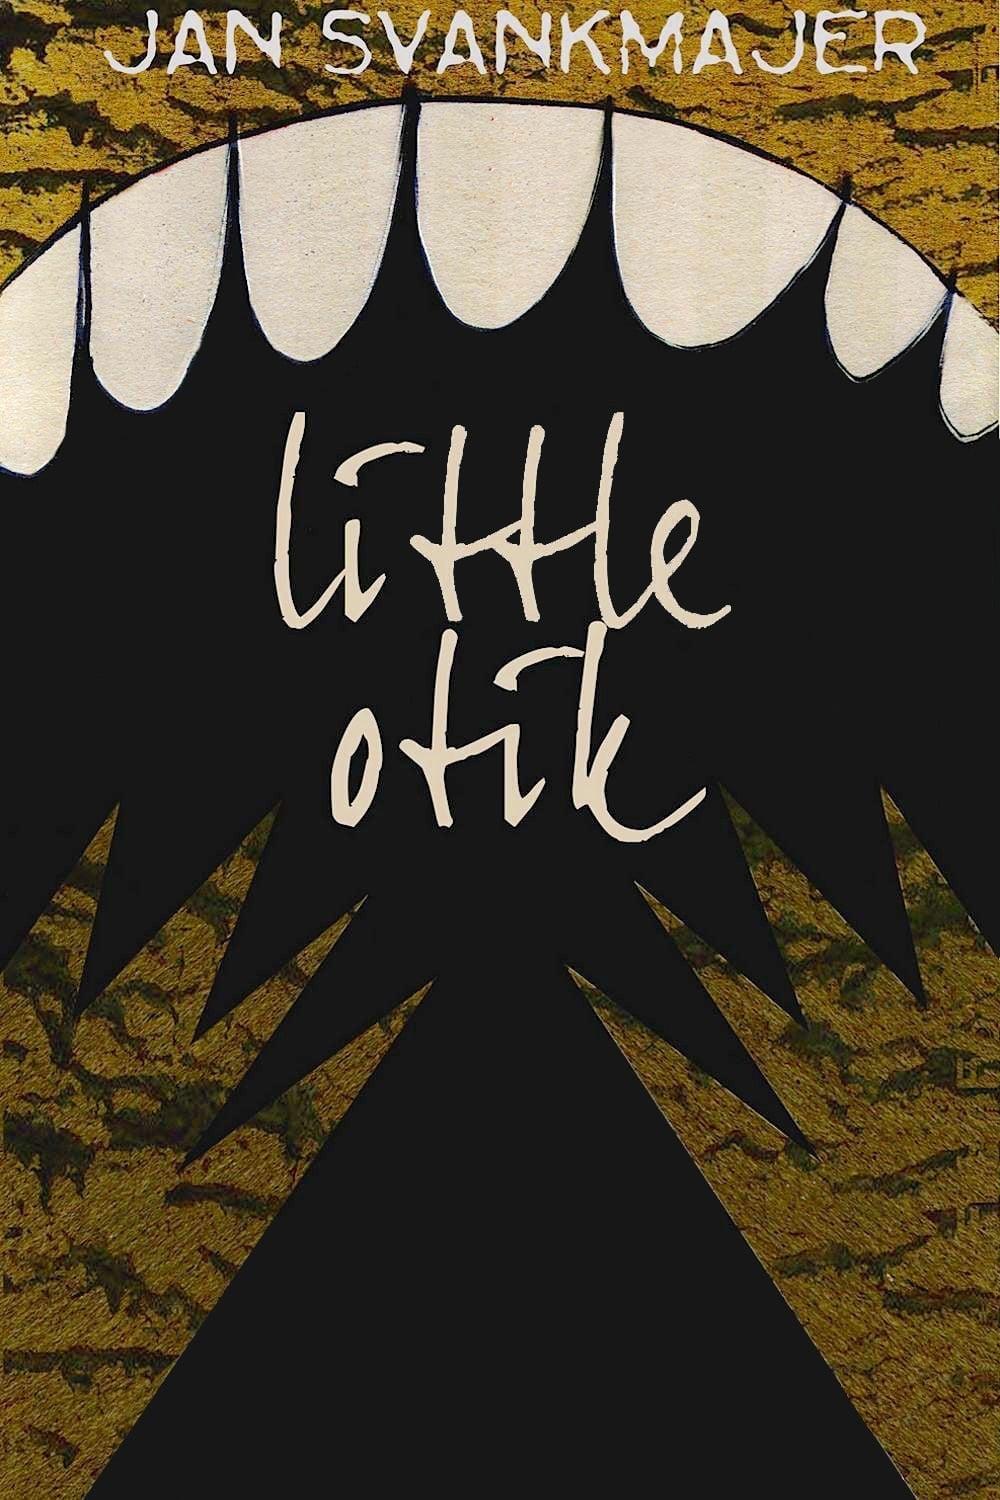 Little Otik poster